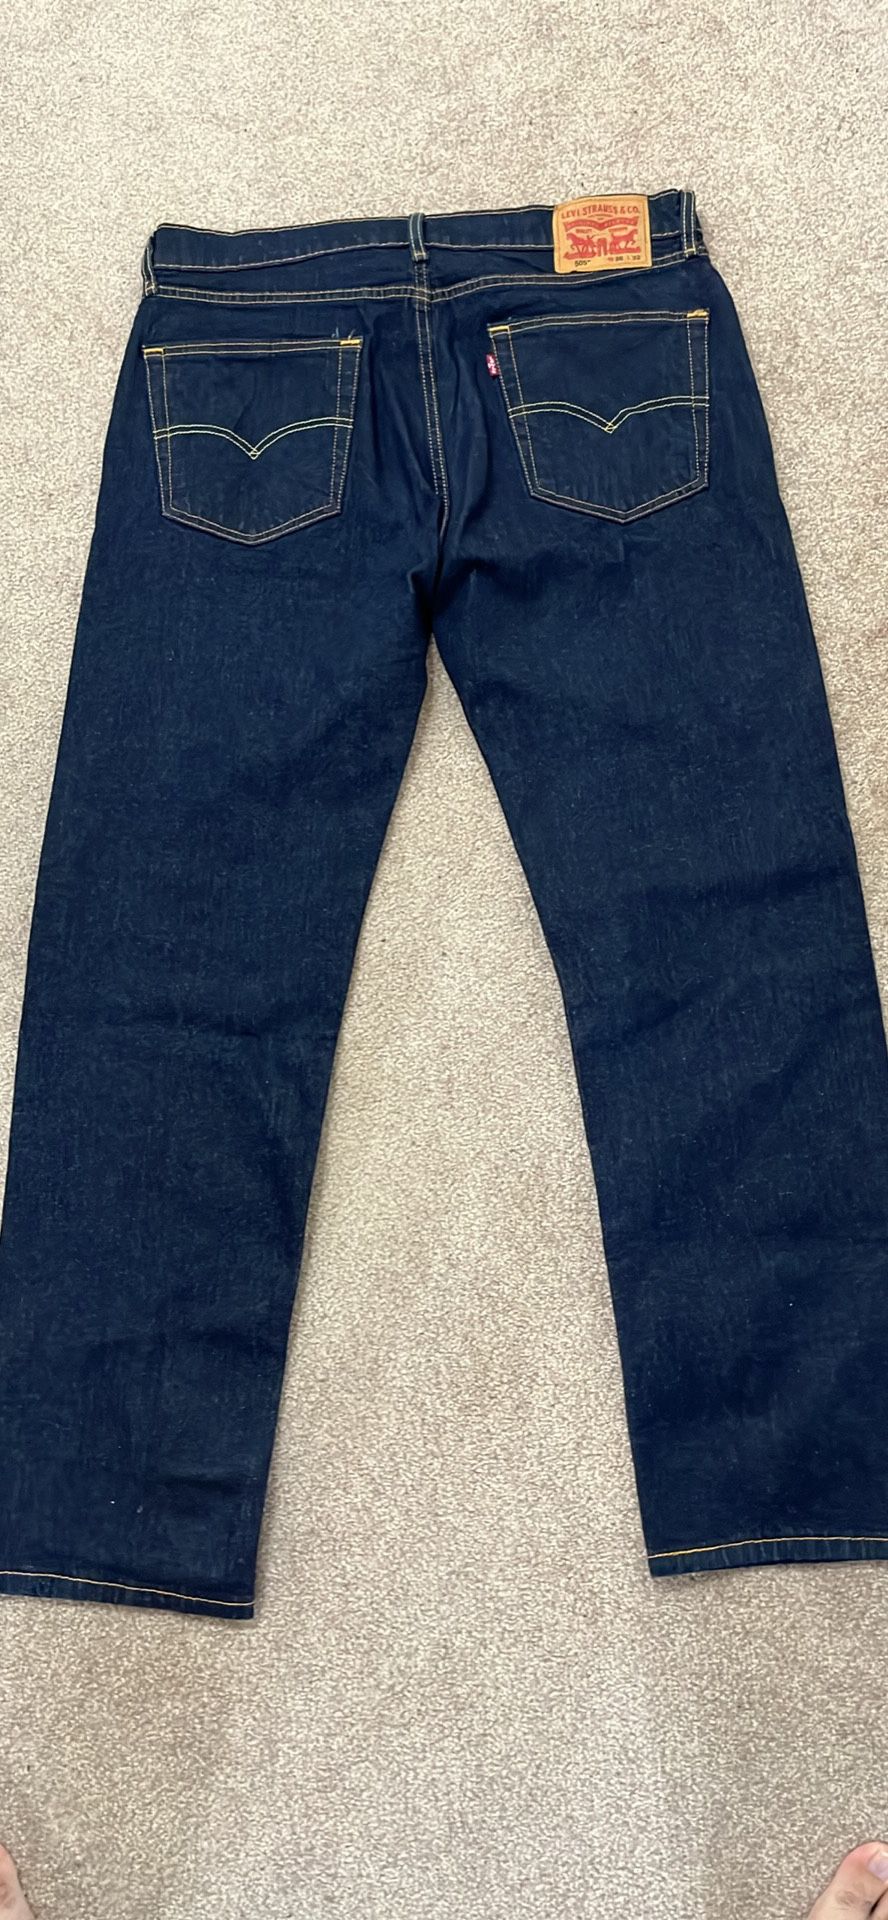 Levi’s 505 Men’s jeans 36X32